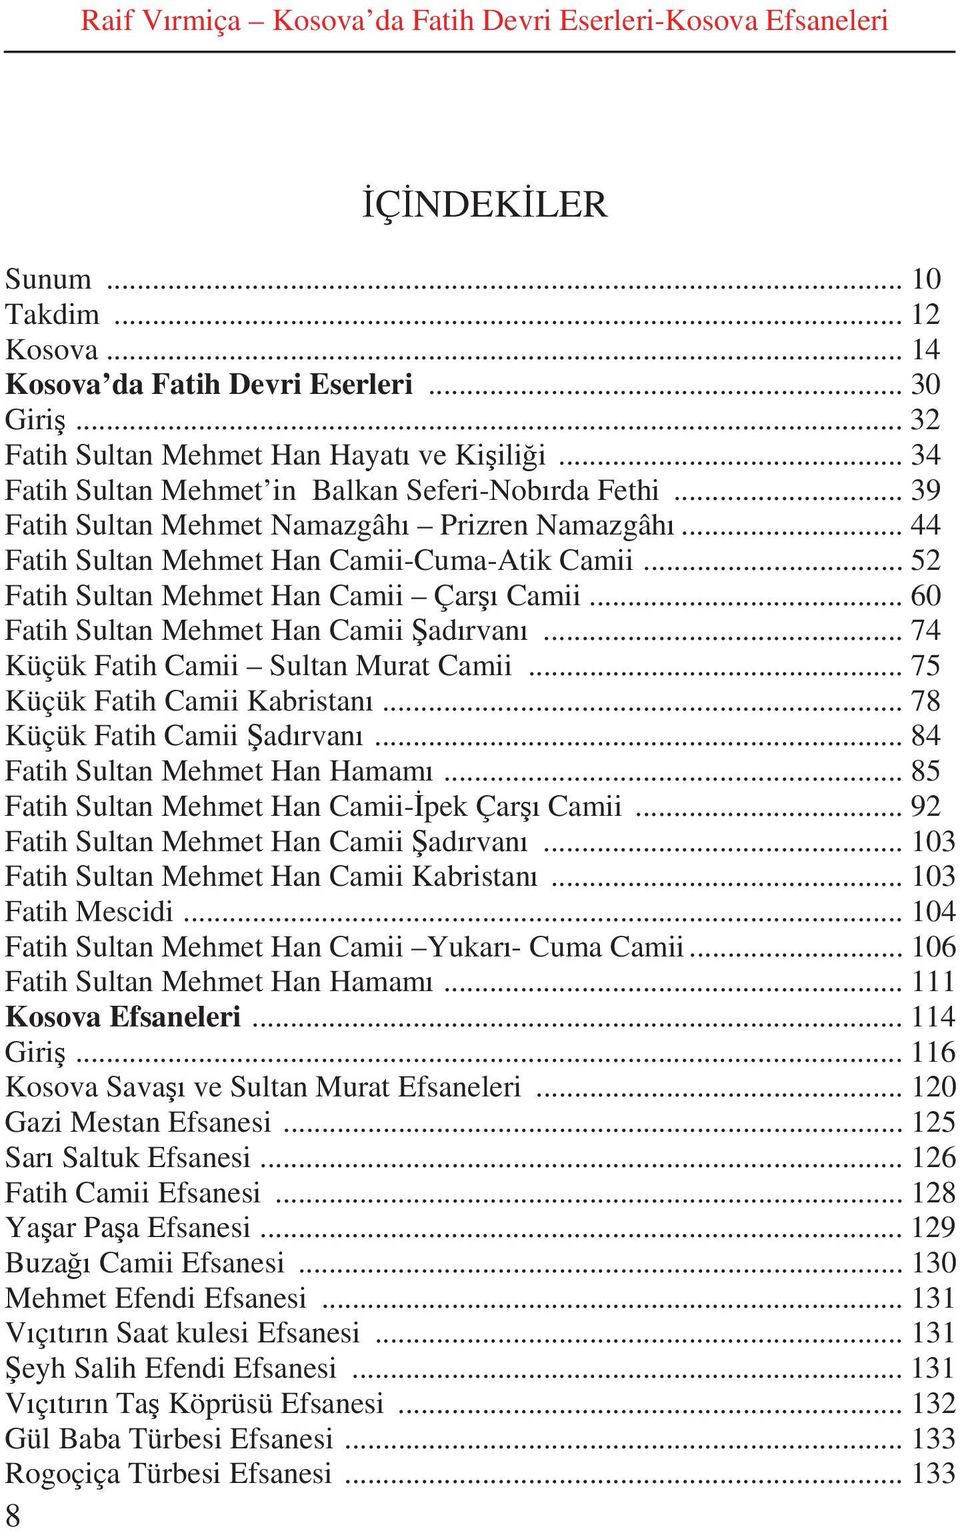 .. 52 Fatih Sultan Mehmet Han Camii Çar Camii... 60 Fatih Sultan Mehmet Han Camii ad rvan... 74 Küçük Fatih Camii Sultan Murat Camii... 75 Küçük Fatih Camii Kabristan... 78 Küçük Fatih Camii ad rvan.